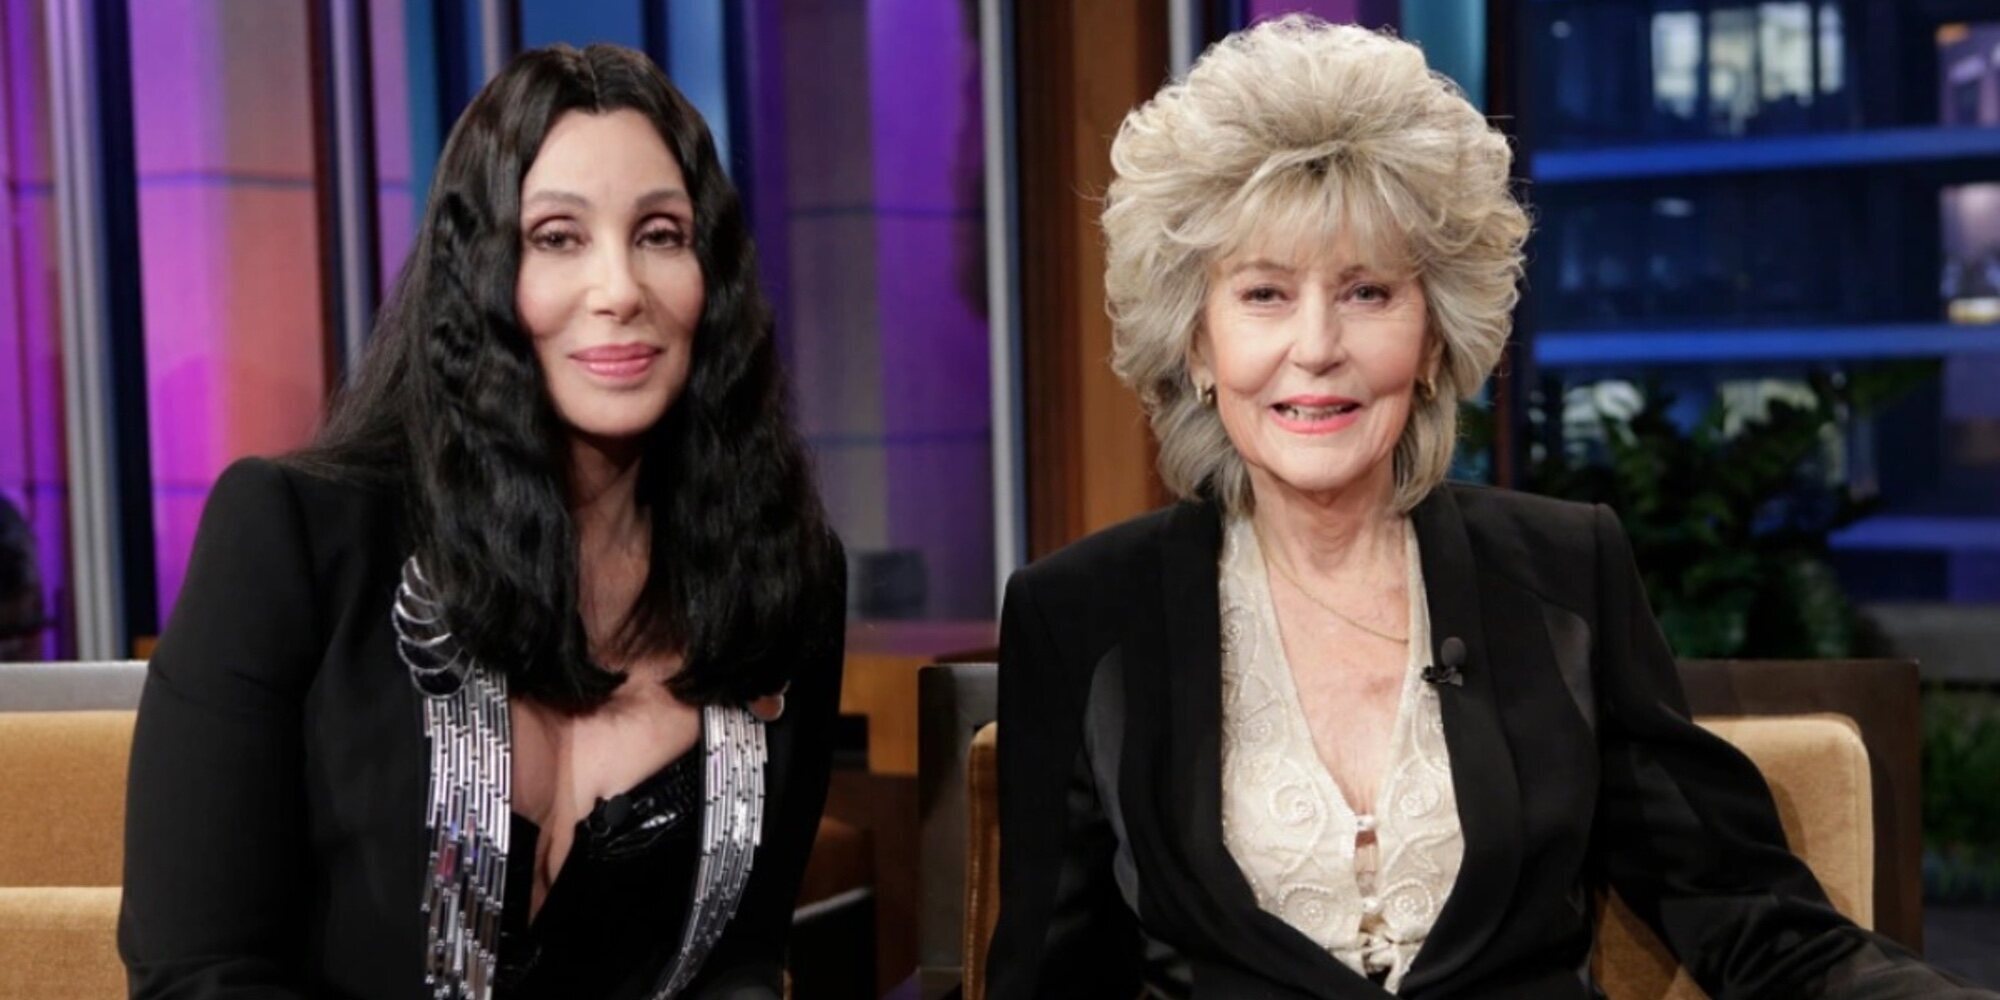 Muere la madre de Cher a los 96 años: "Mamá se ha ido"